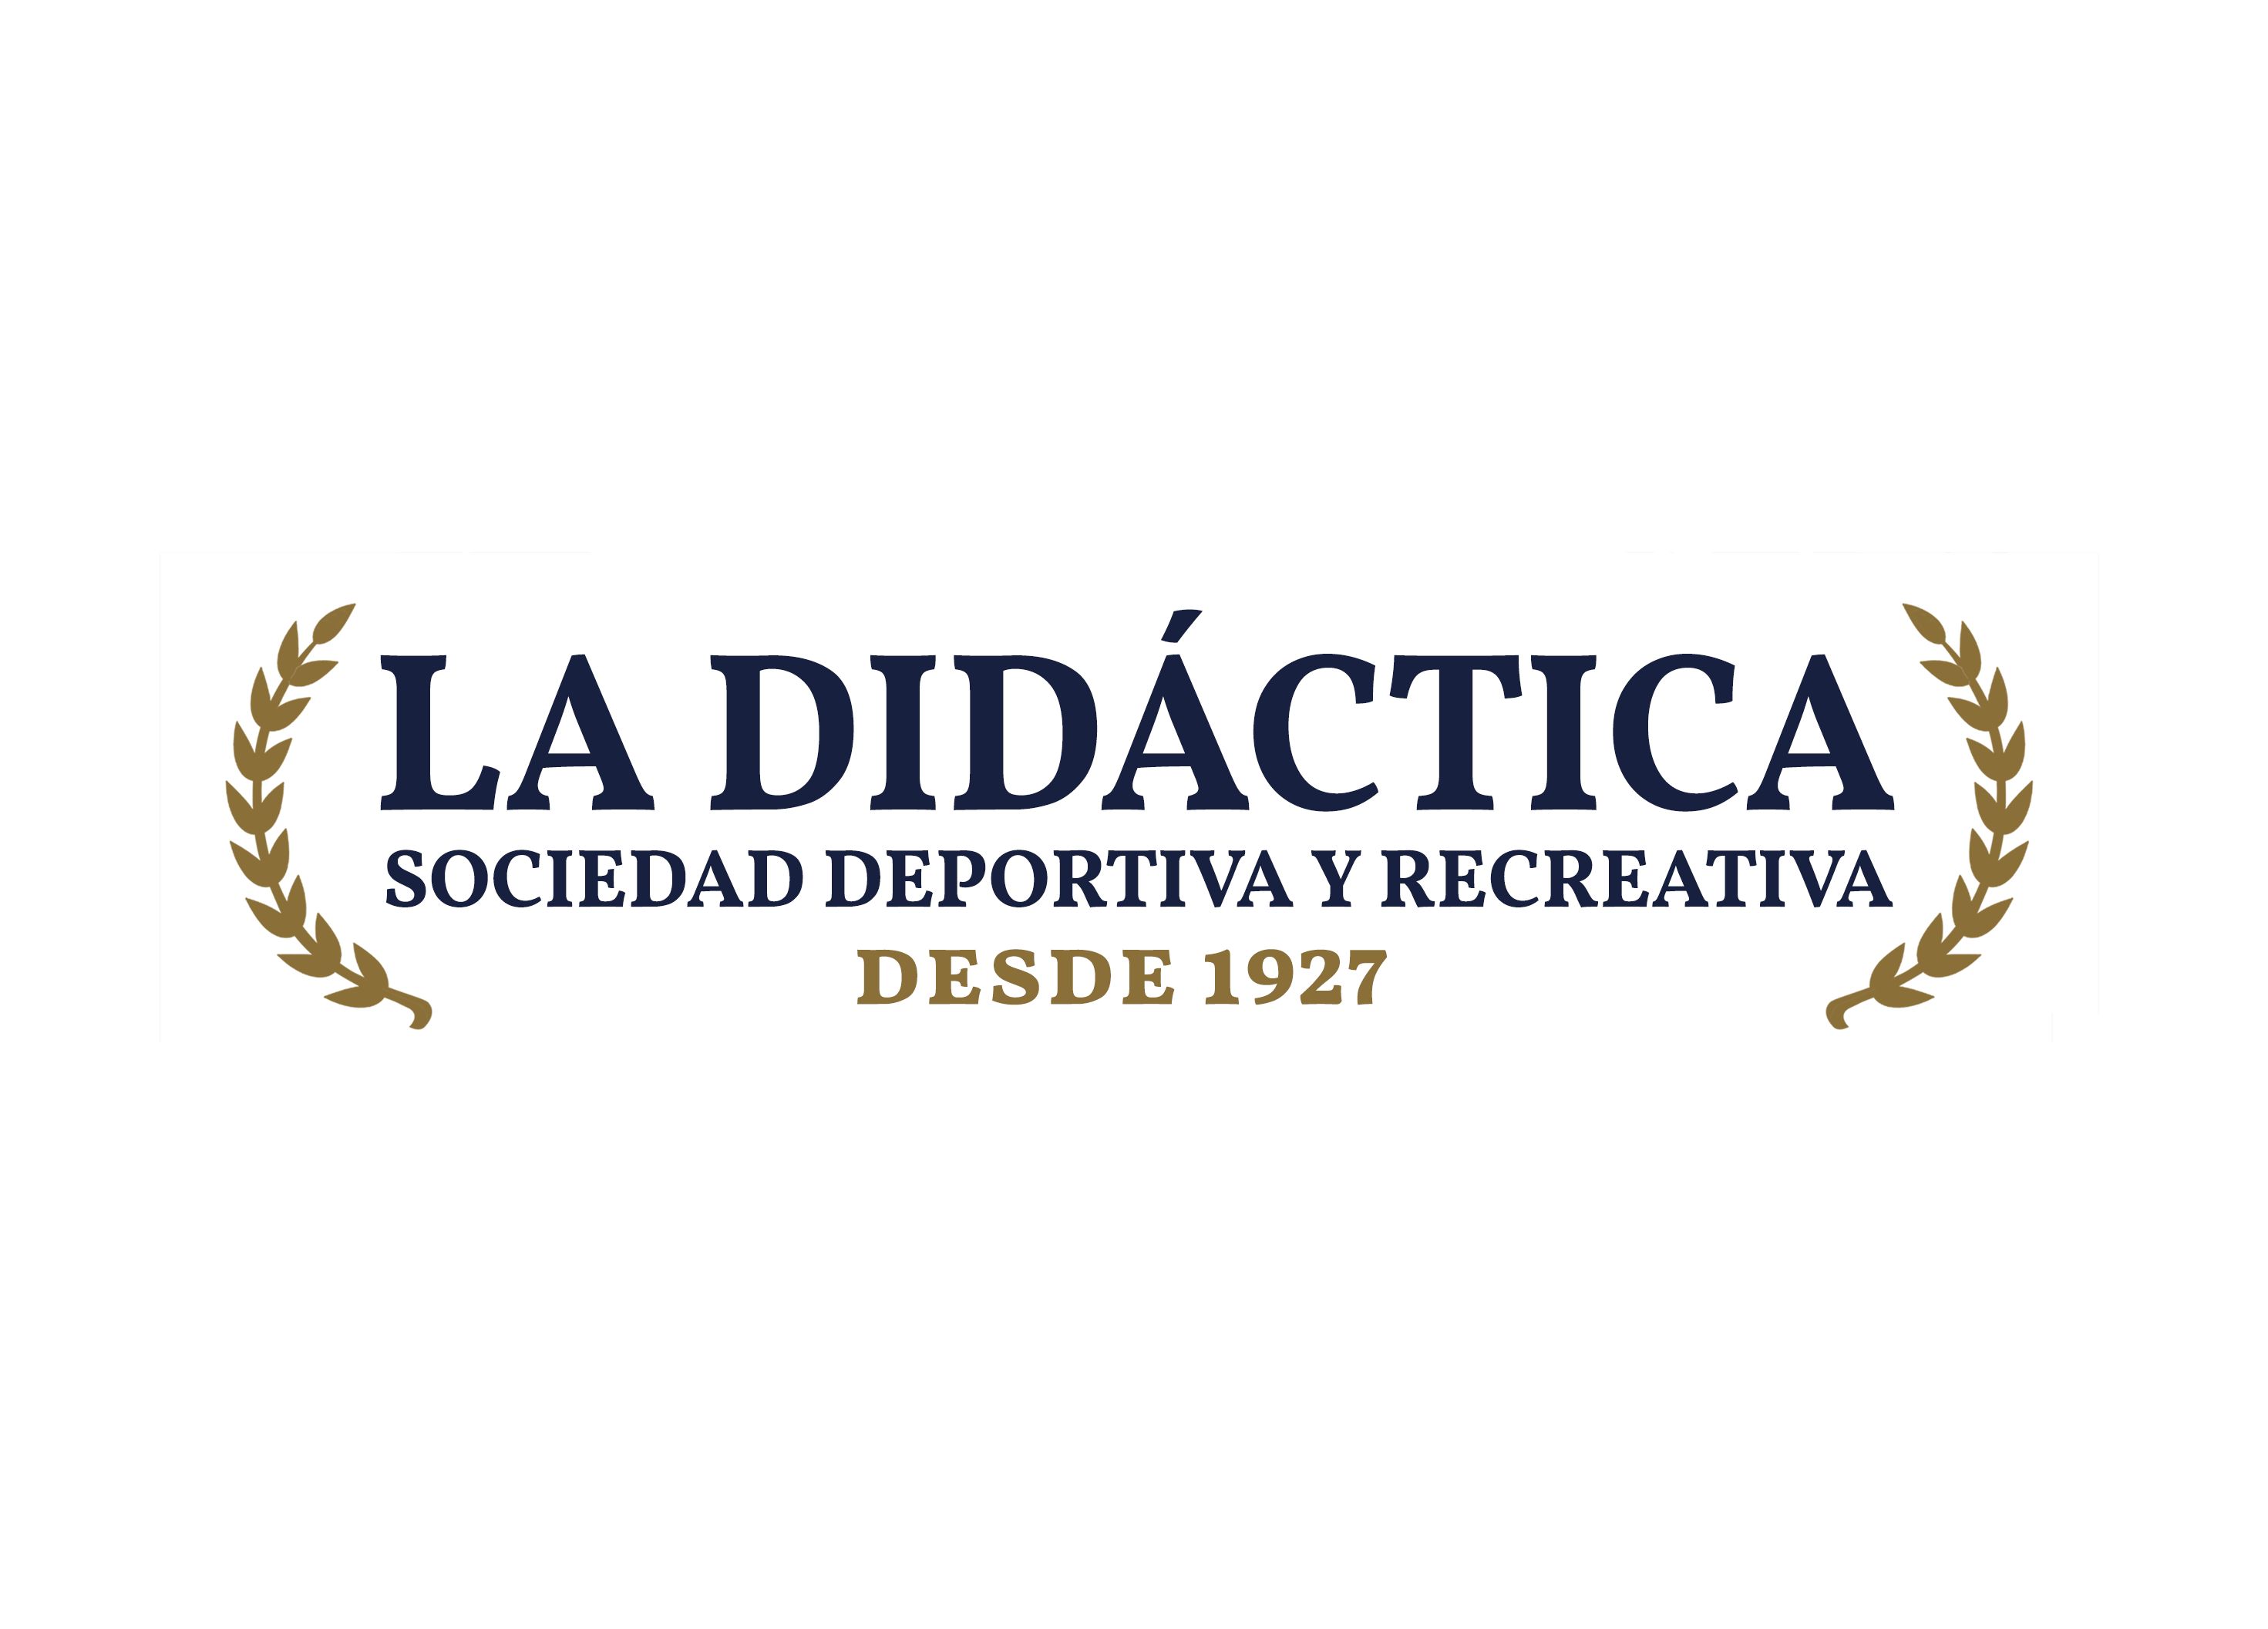 Sociedad deportiva y recreativa La Didáctica (desde 1927)